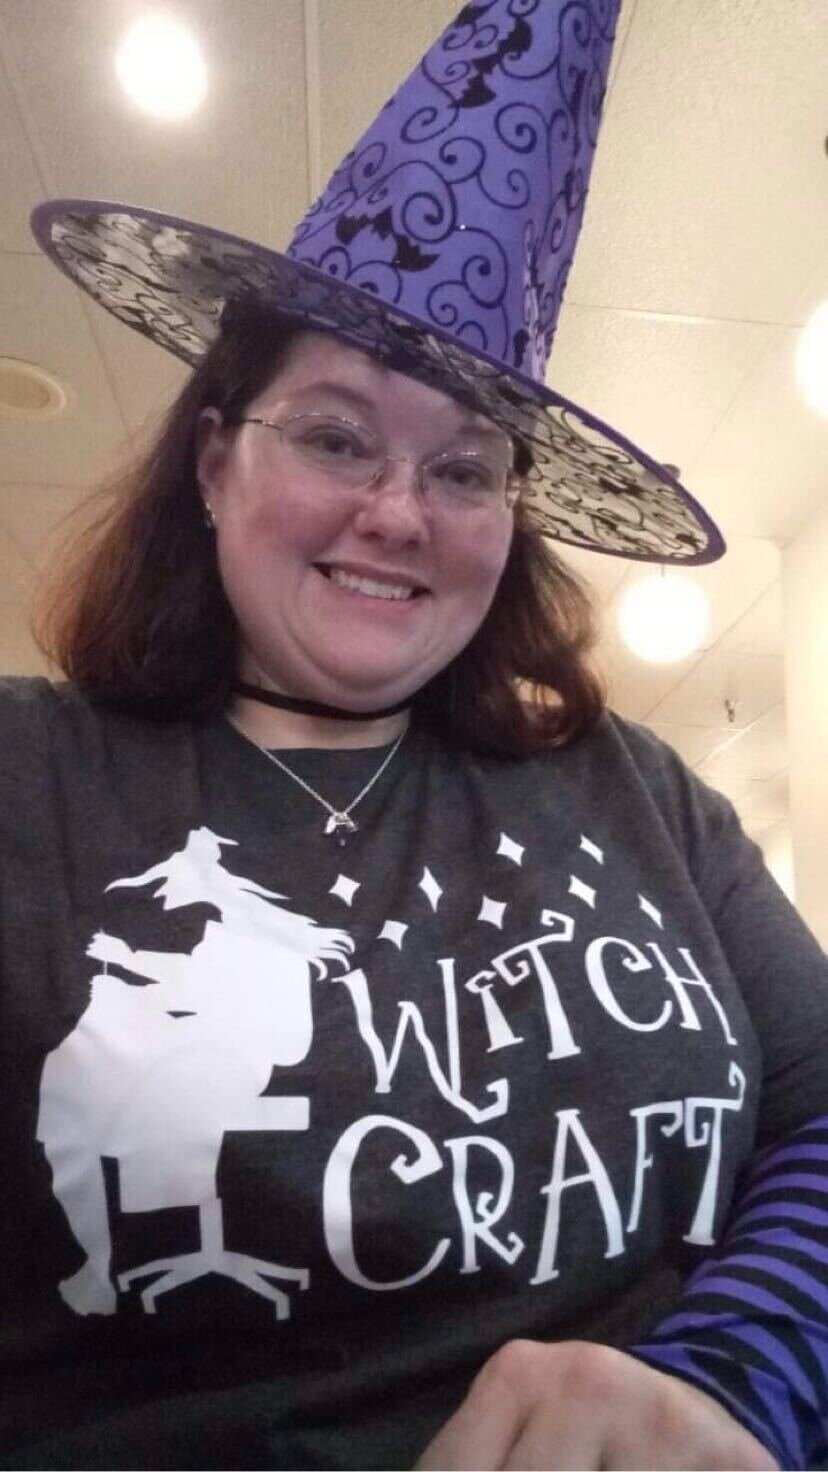 Witch Craft Shirt Hat.jpg